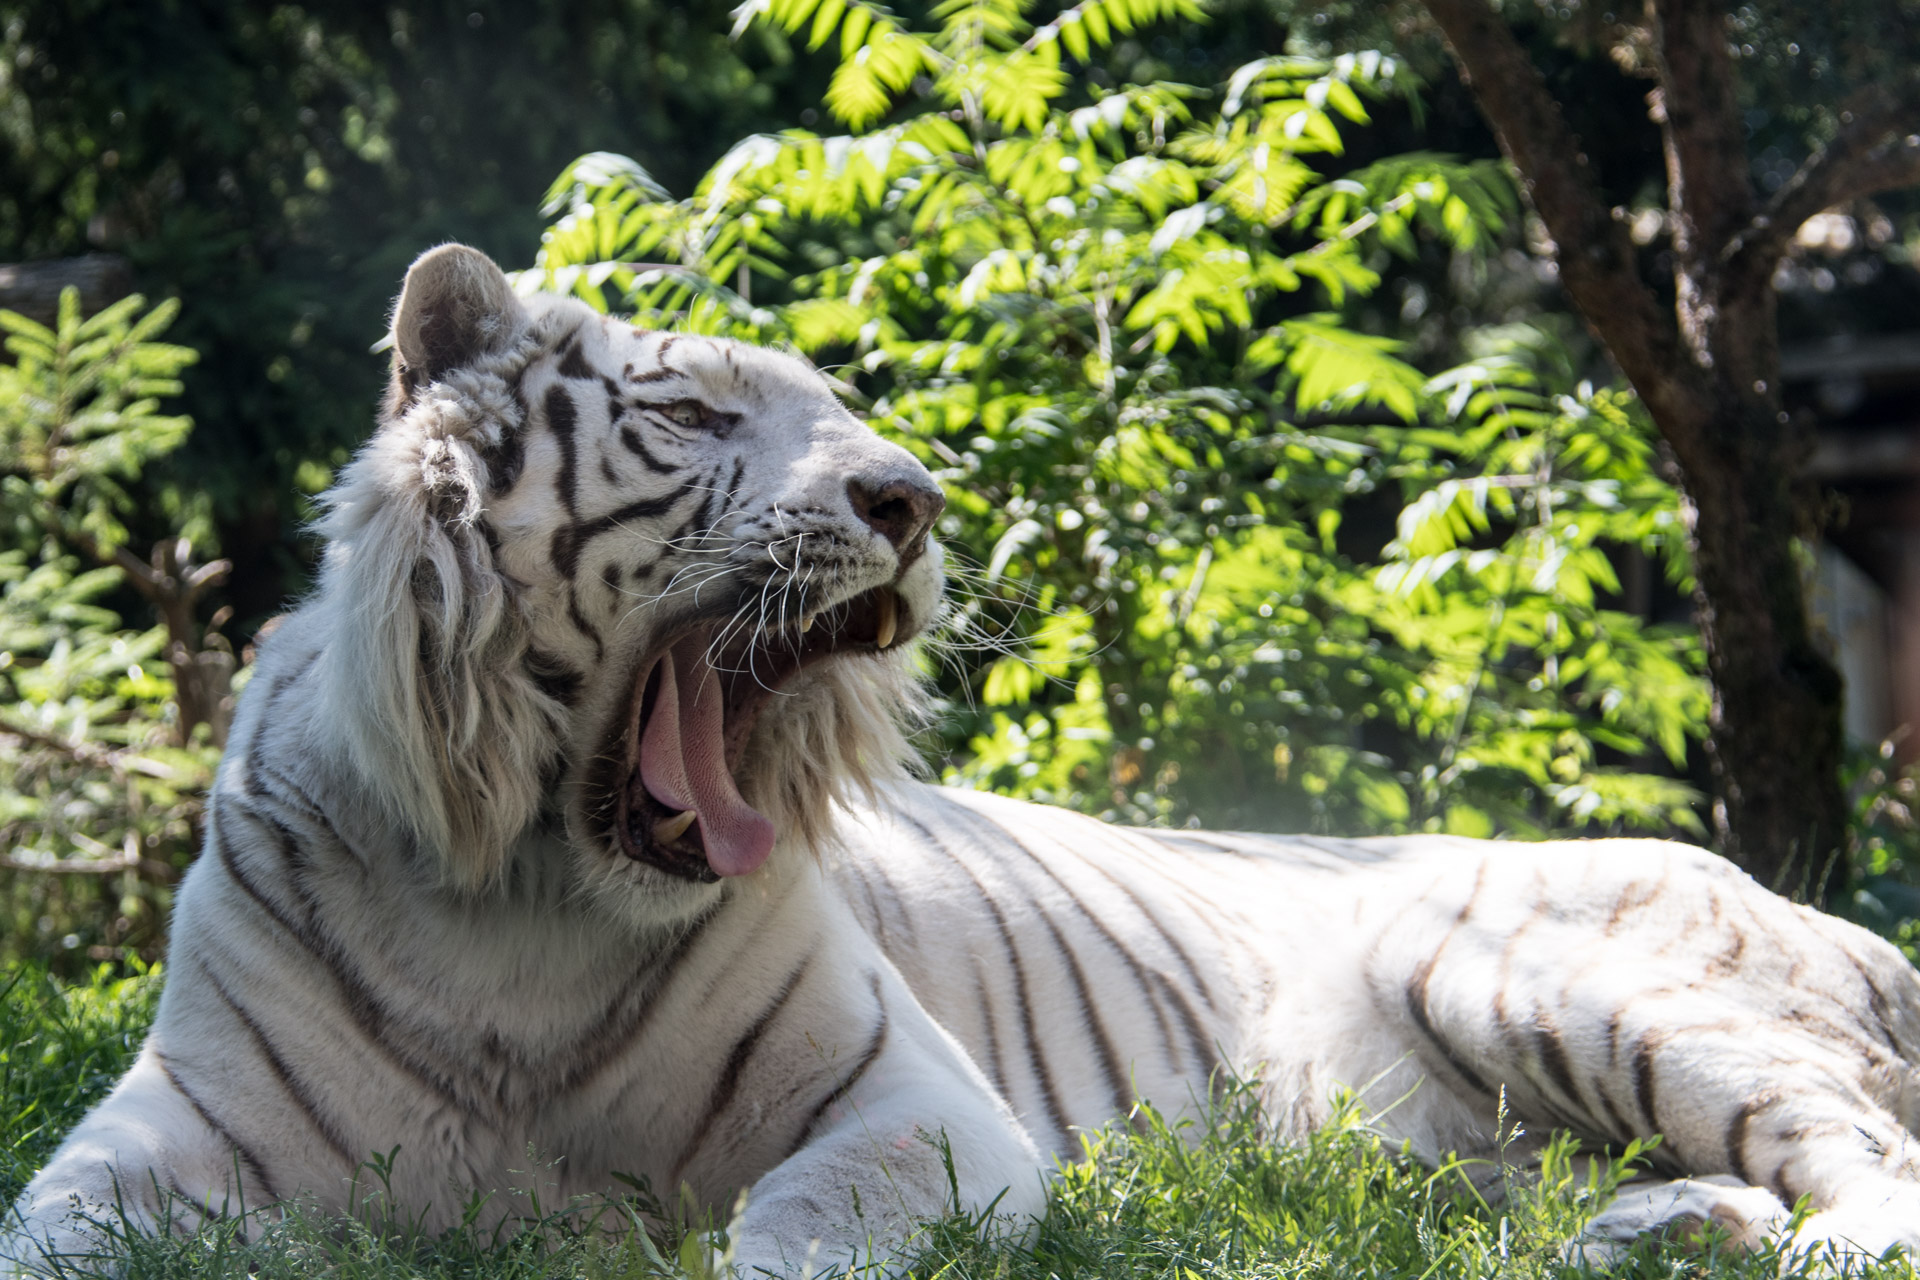 Tigre blanc, mammifère carnivore de la famille des félidés, présentant une mutation génétique lui conférant une robe blanche rayée de noir.